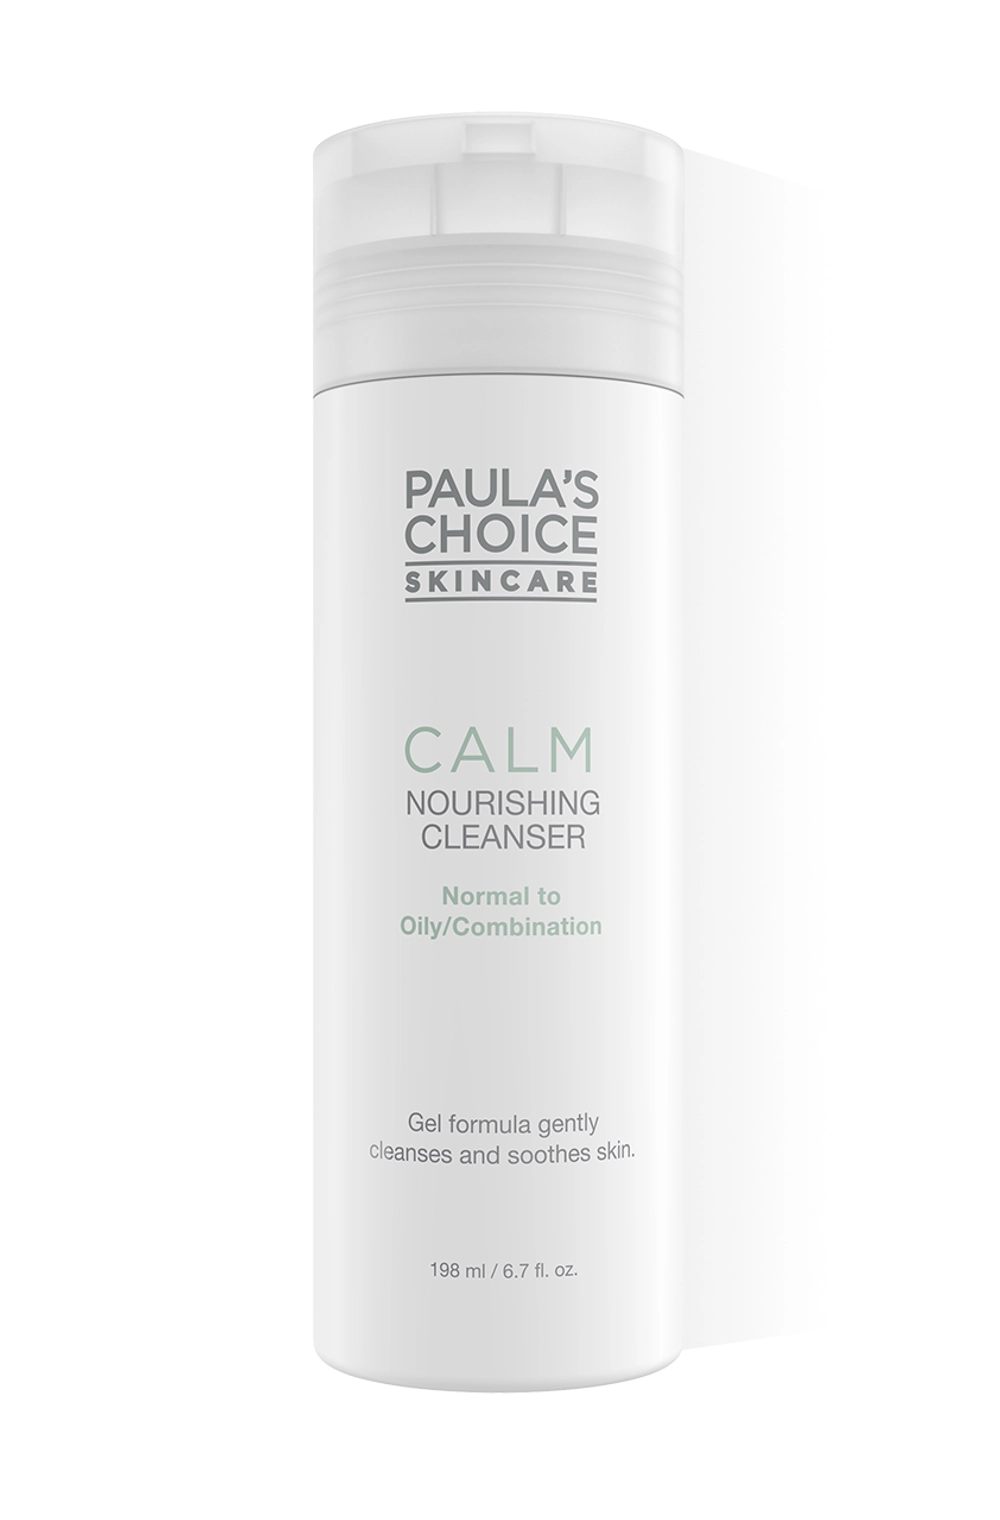 Пенка Paula's Choice Calm Nourishing Cleanser для чувствительной кожи (нормальной, жирной, комбинированной) 198 мл